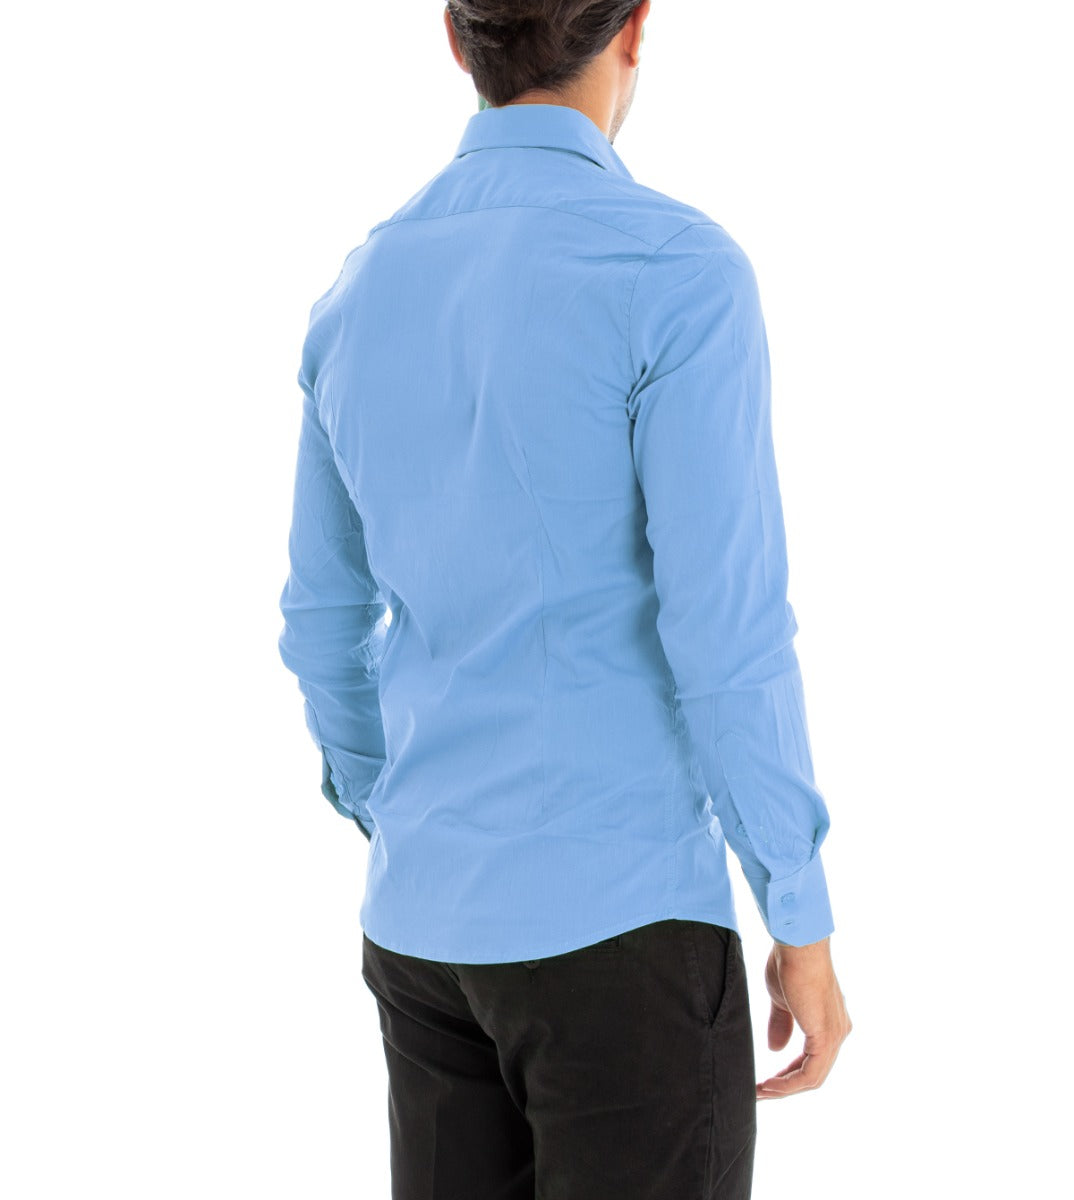 Camicia Uomo Con Colletto Manica Lunga Slim Fit Basic Casual Cotone Azzurro GIOSAL-C1812A